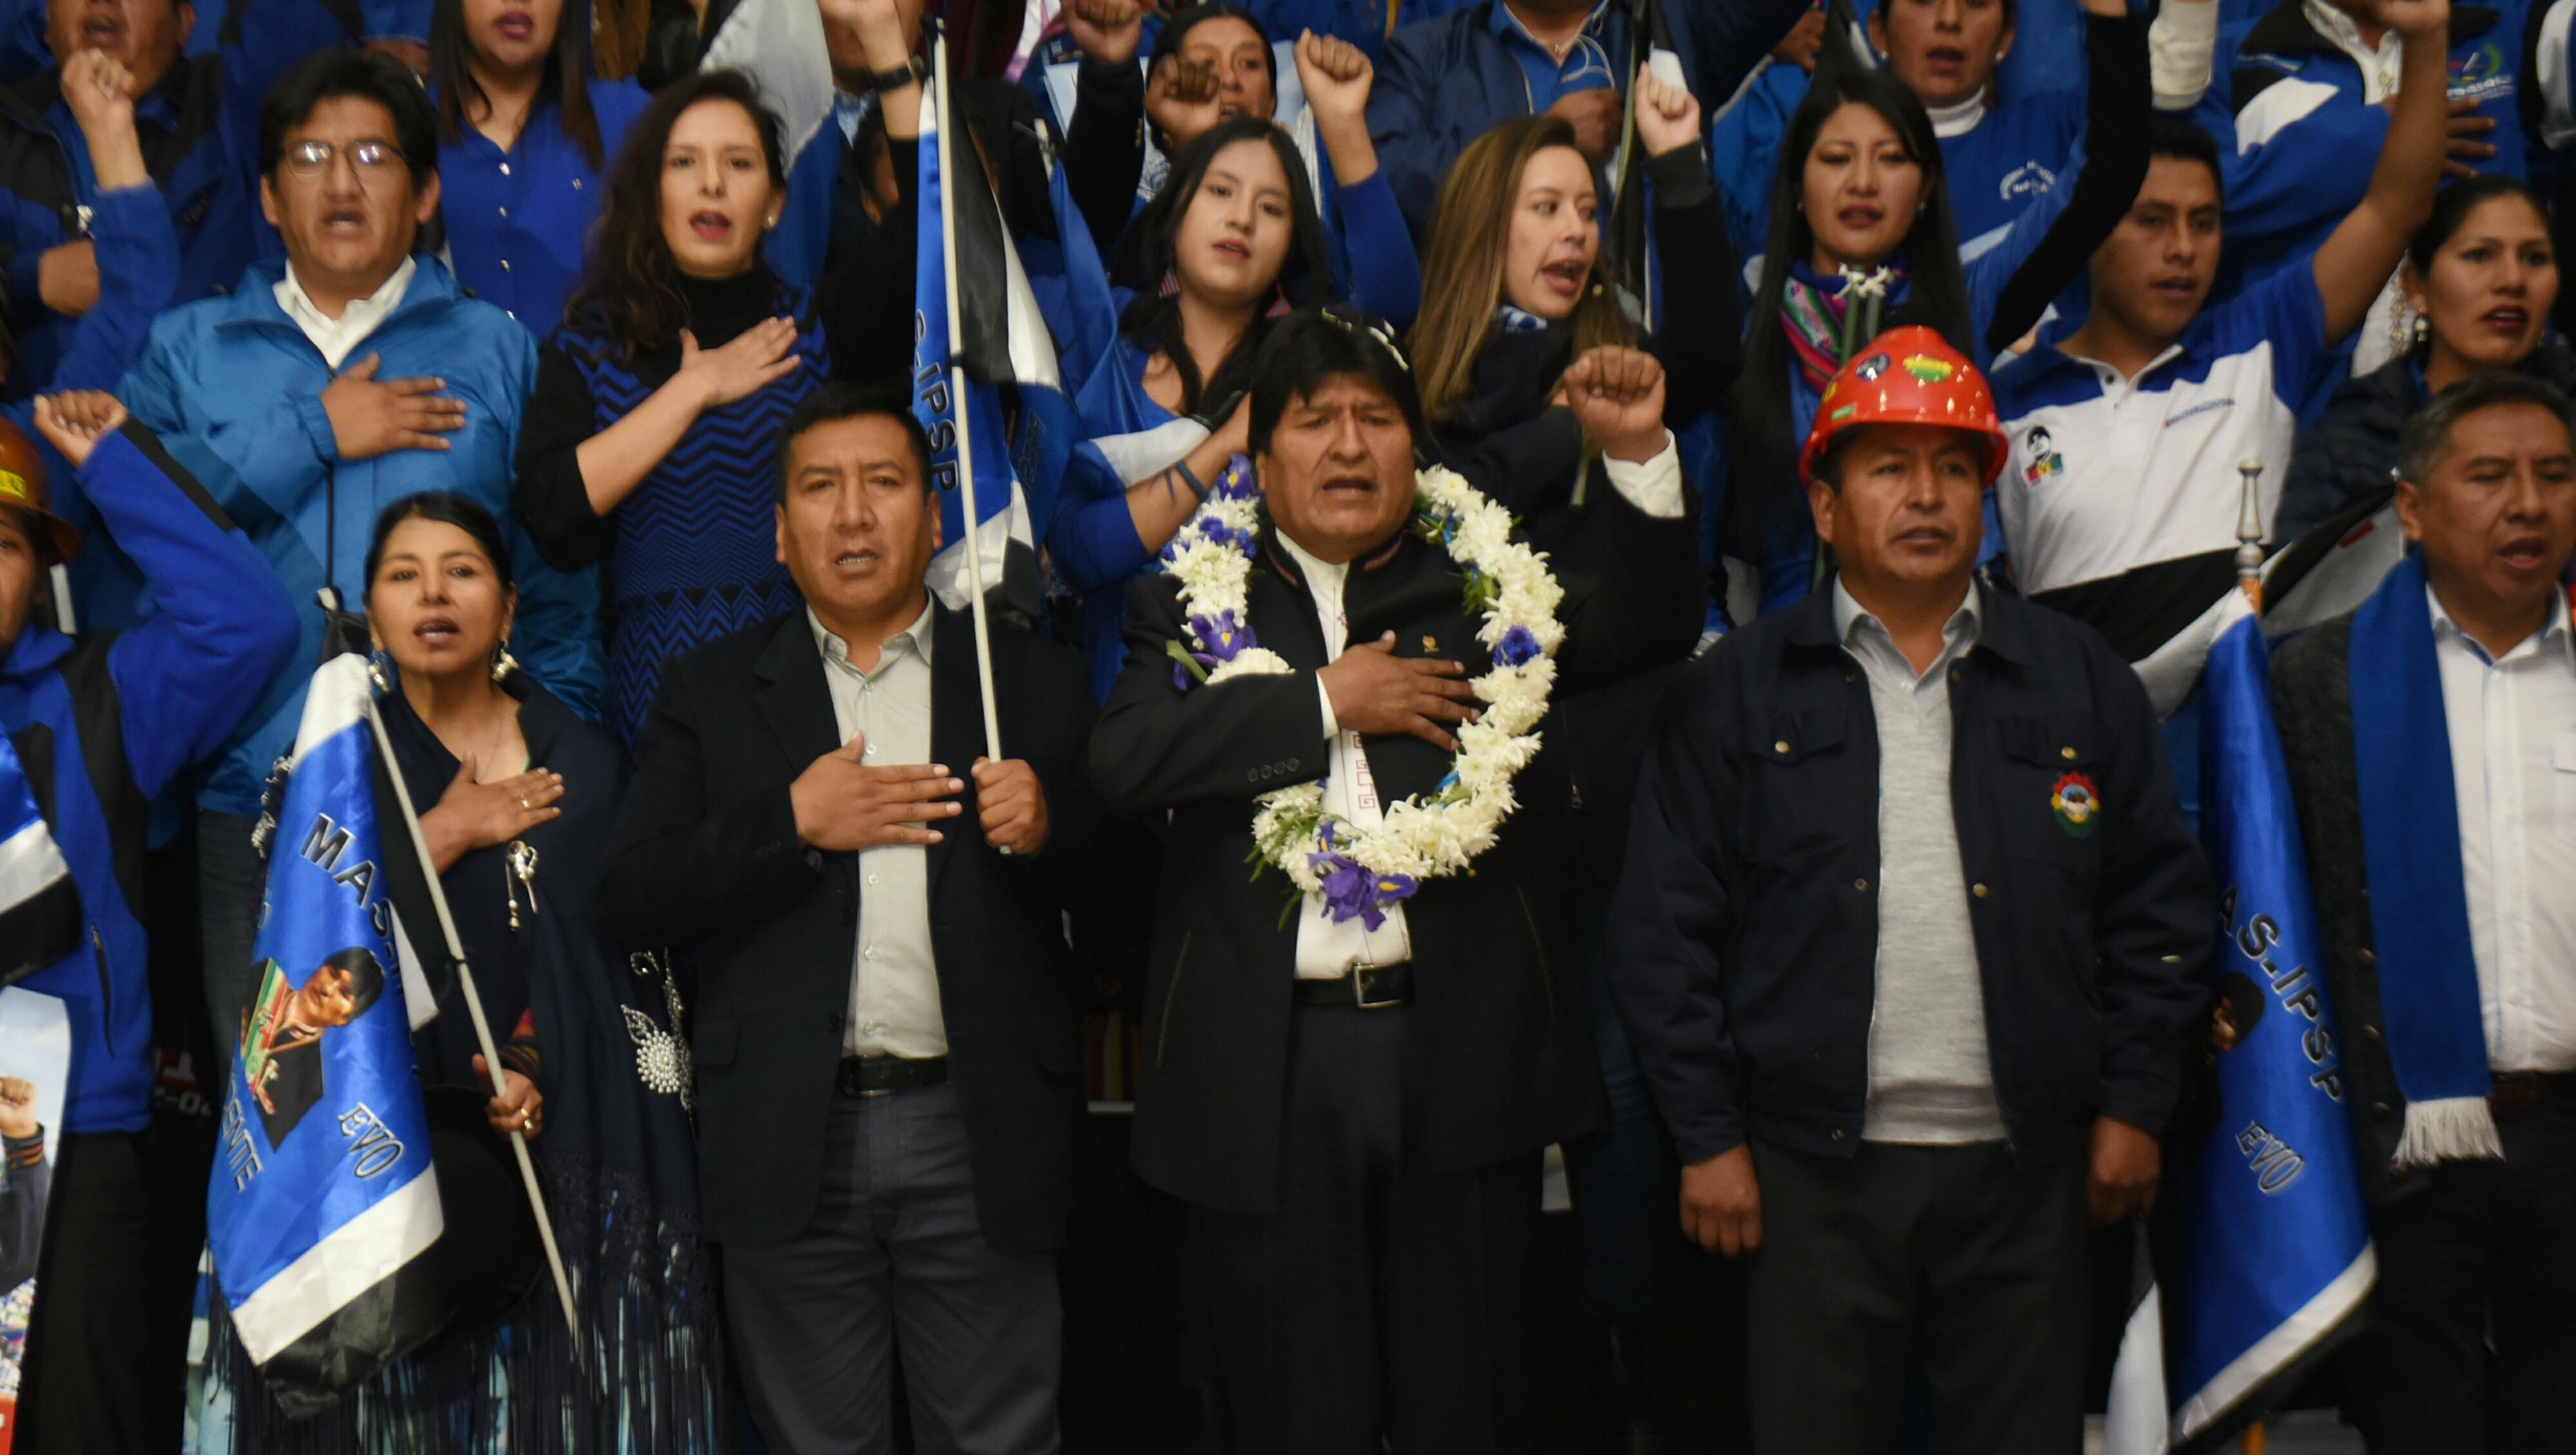 El presidente boliviano tiene casi 15 puntos de ventaja sobre su rival más cercano en la intención de voto, de cara a las elecciones de octubre.